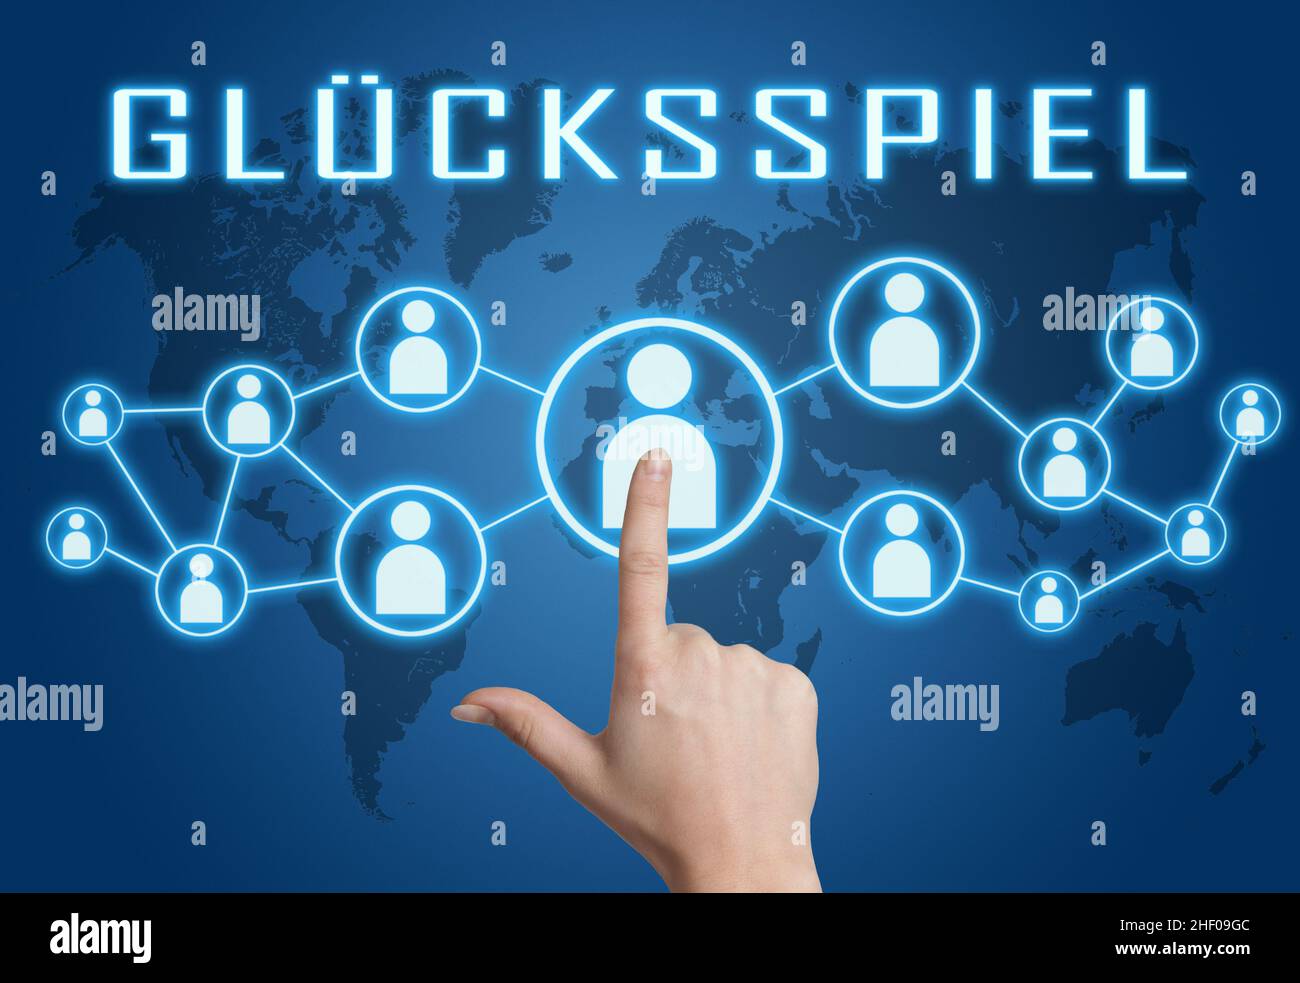 Gluecksspiel - parola tedesca per il gioco d'azzardo o il gioco d'azzardo - testo concetto con la mano premendo icone sociali su sfondo blu mappa del mondo. Foto Stock